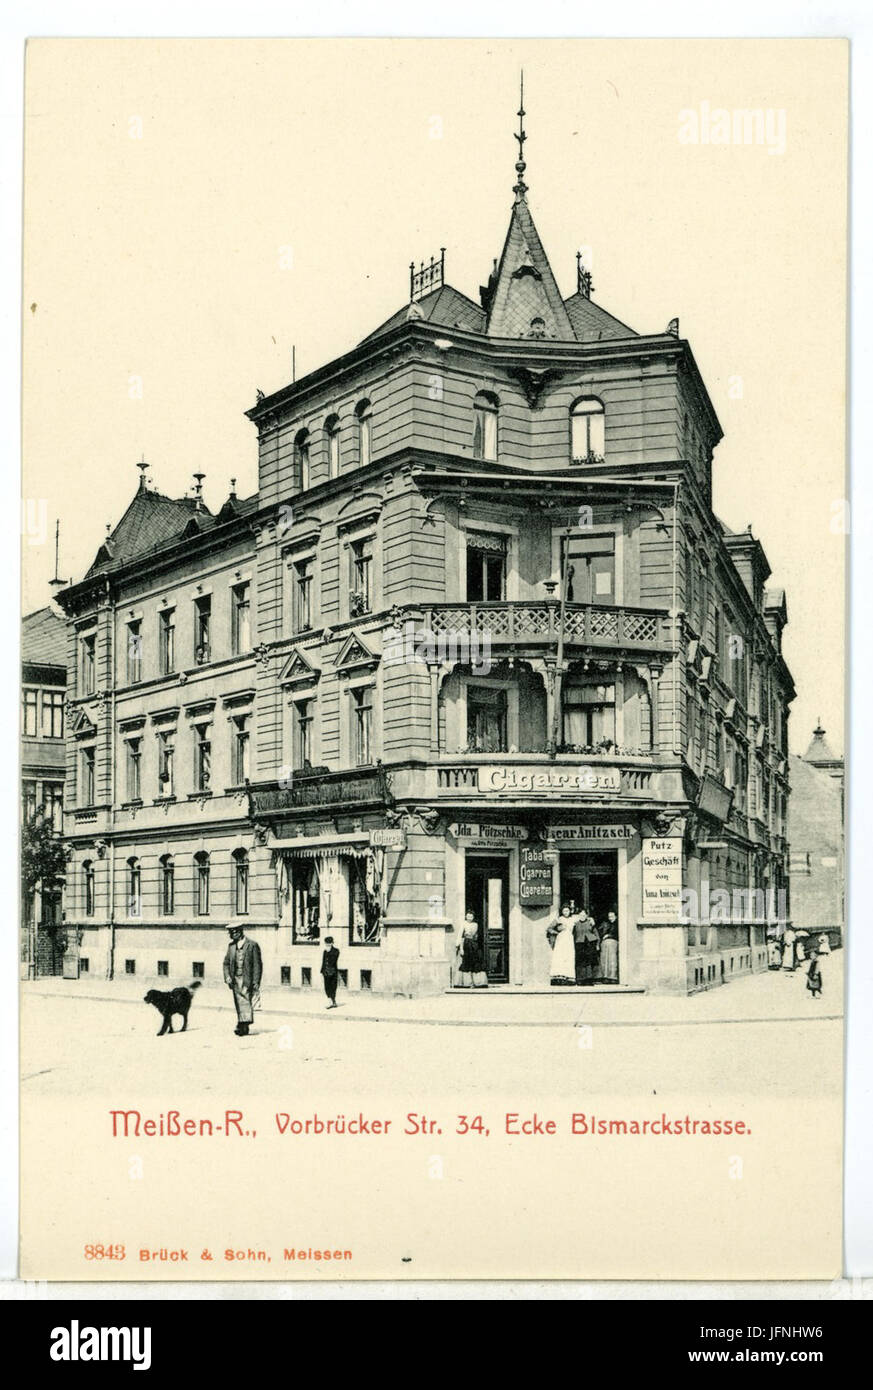 08843-Meißen-1907-Vorbrücker Straße 34 - Ecke Bismarckstraße-Brück & Sohn Kunstverlag Stock Photo